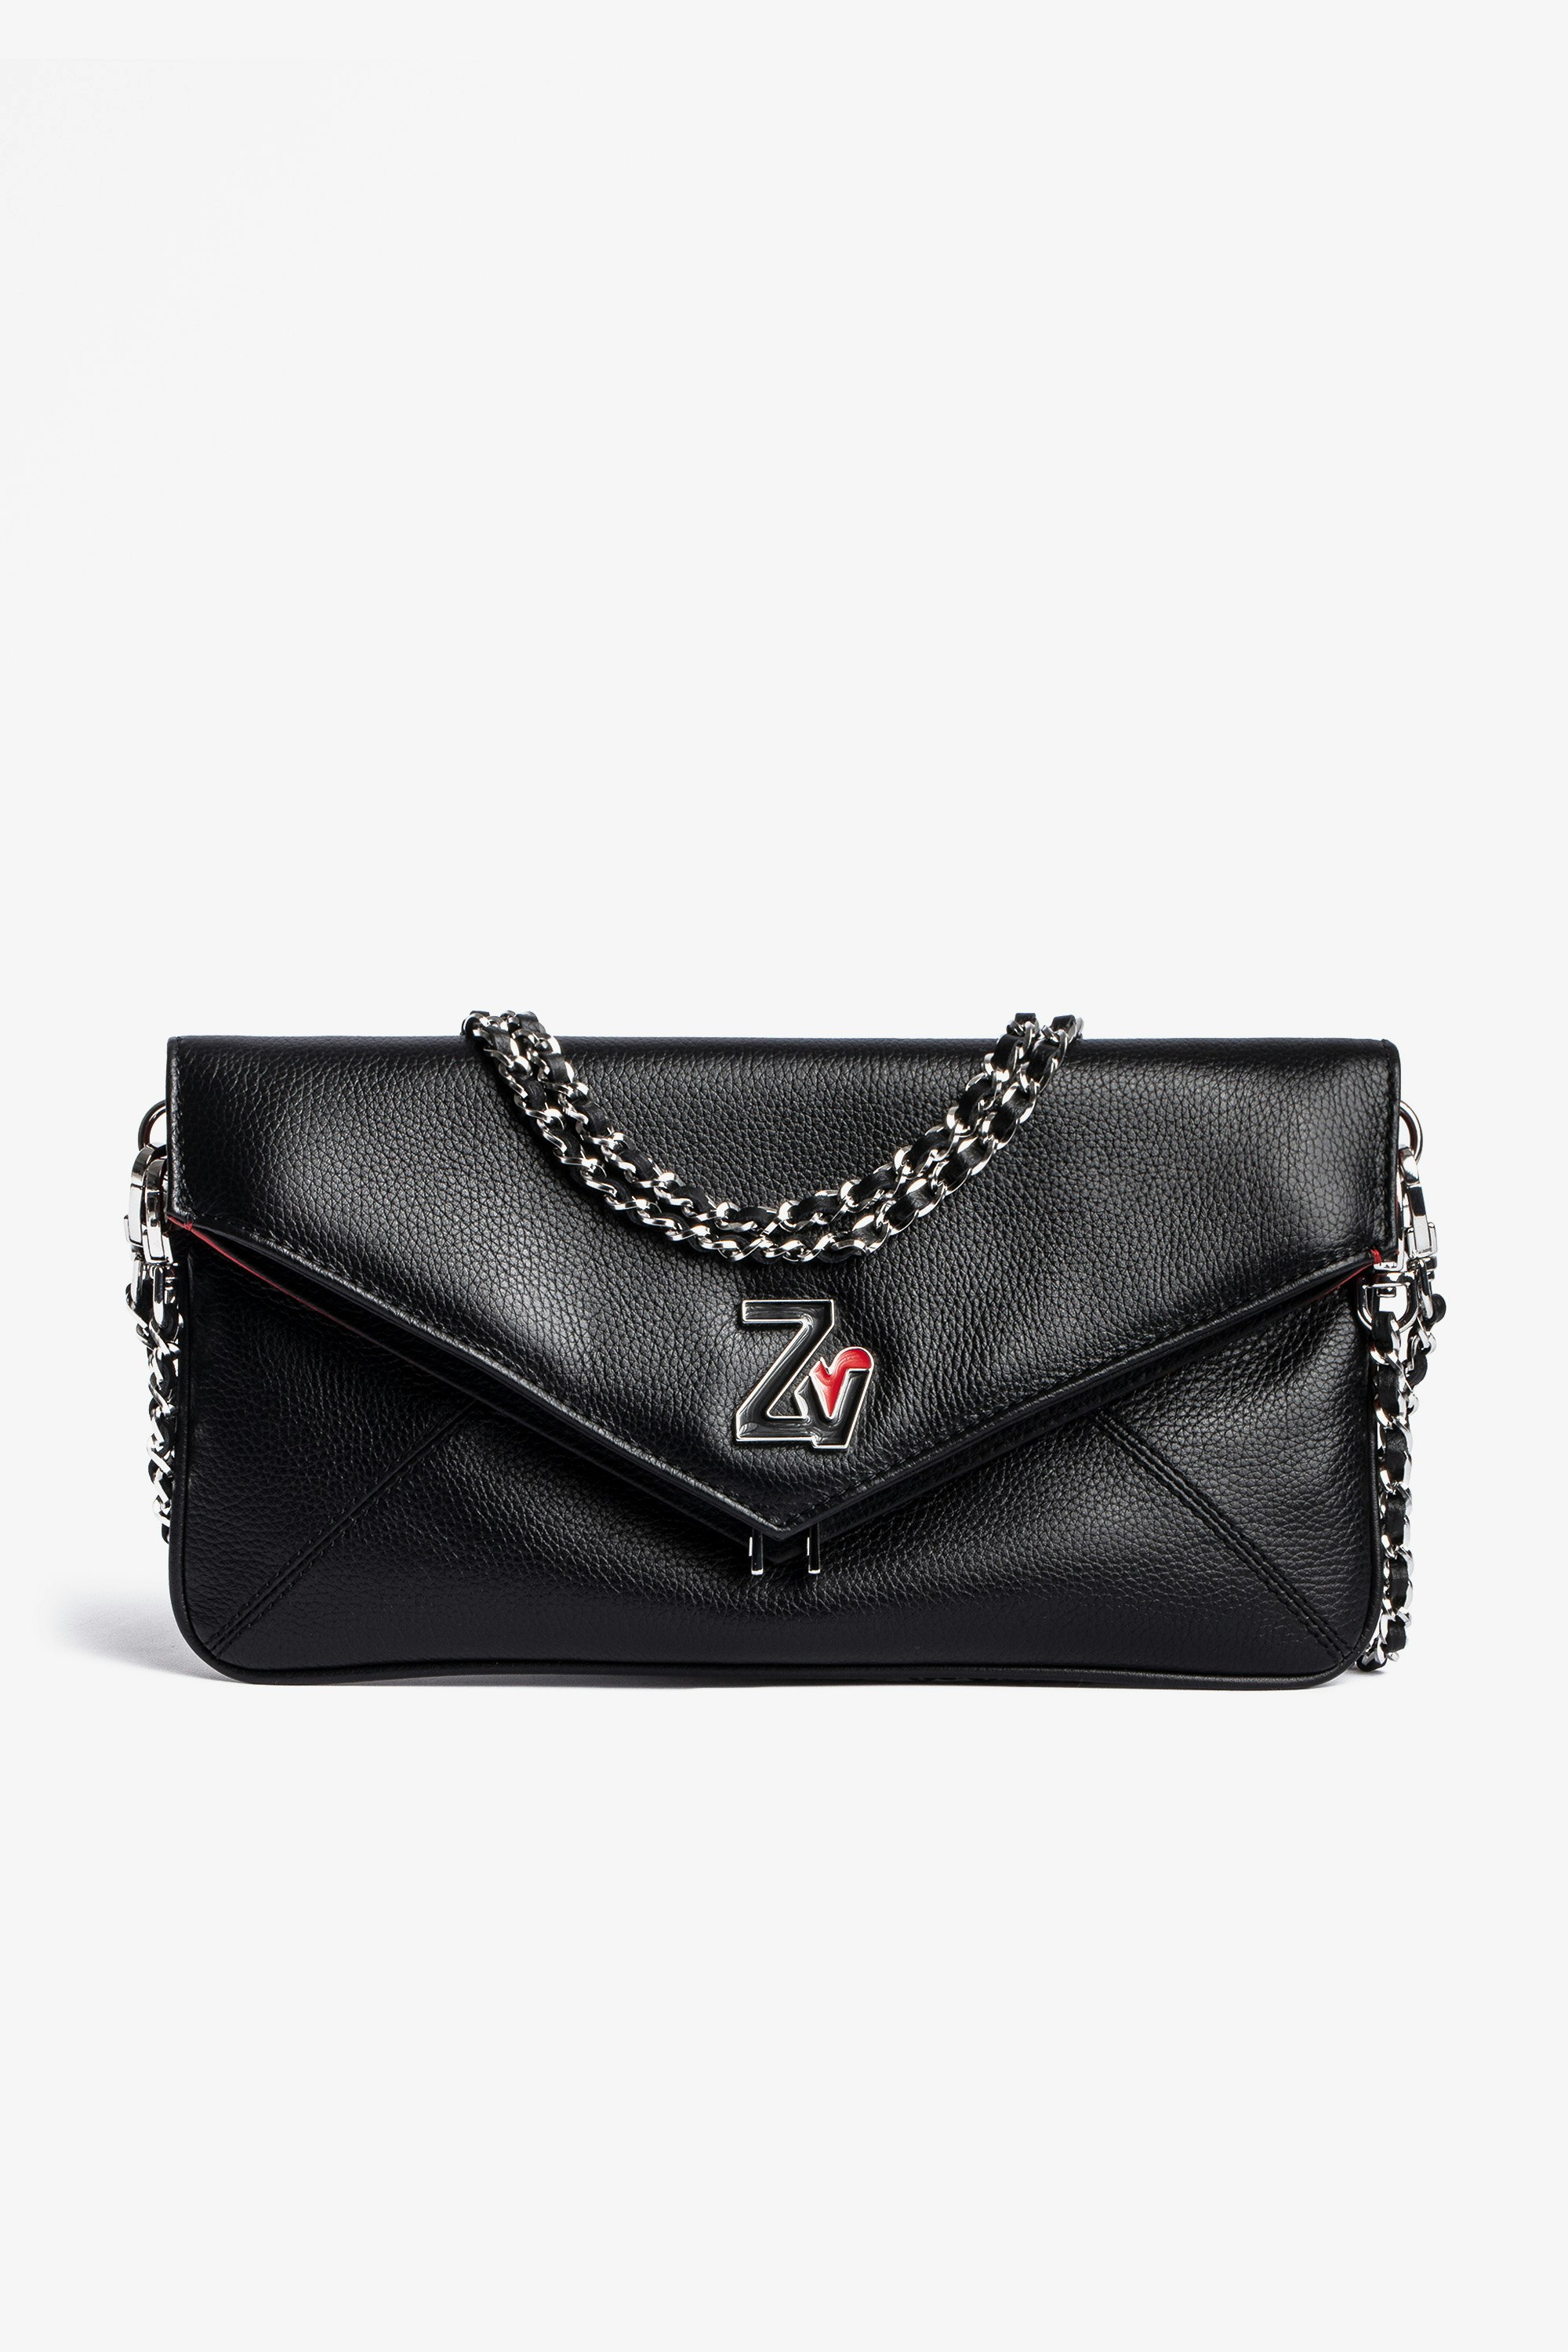 Rockeur Clutch Women’s clutch bag in black grained leather